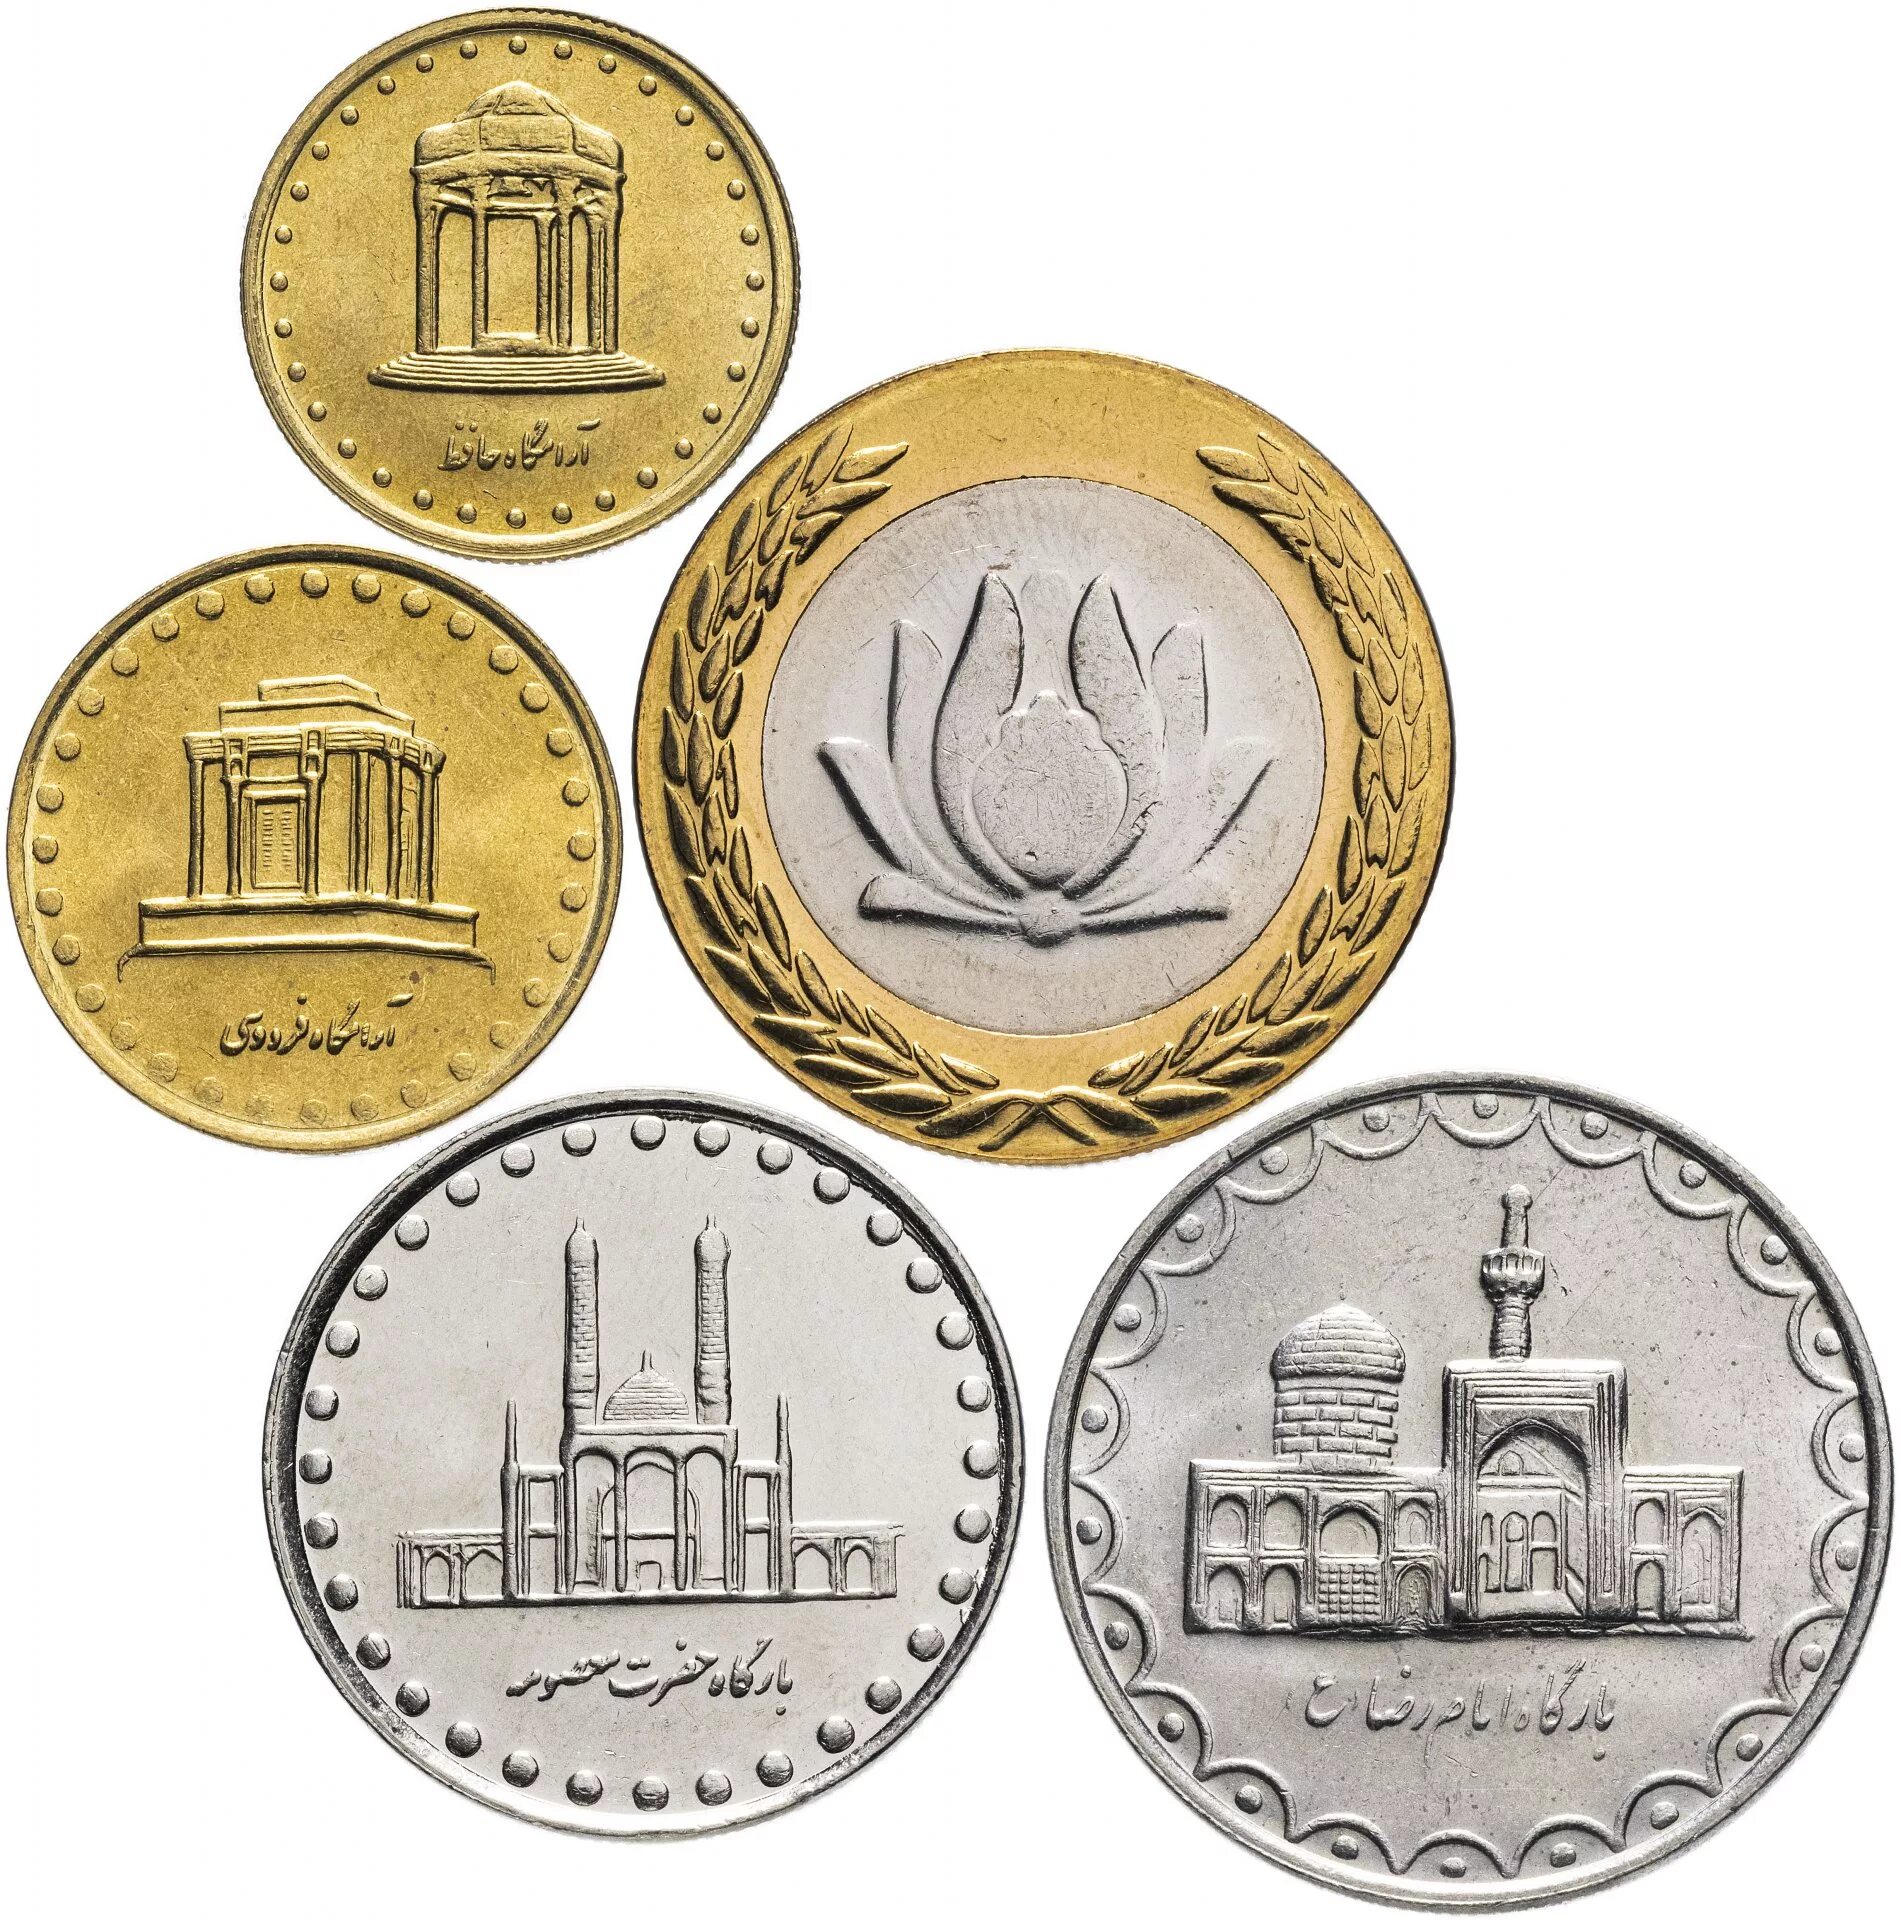 Коллекционные монеты. Набор монет Ирана. Коллекционные м Онуты. Иранские монеты.